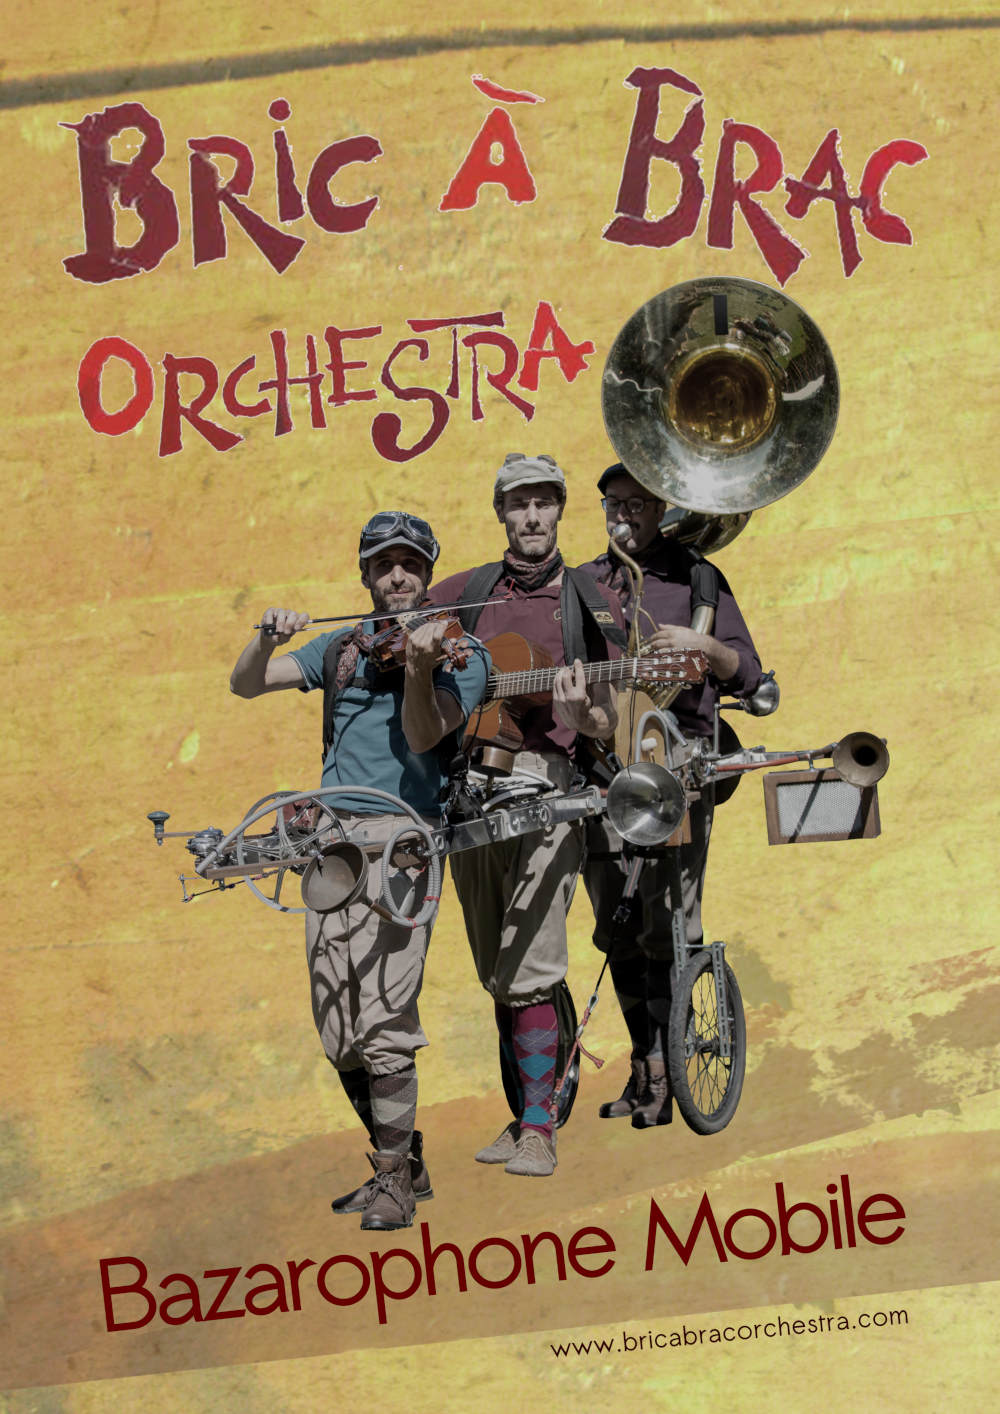 Affiche Bric à Brac Orchestra - Aux Puces Superphoniques